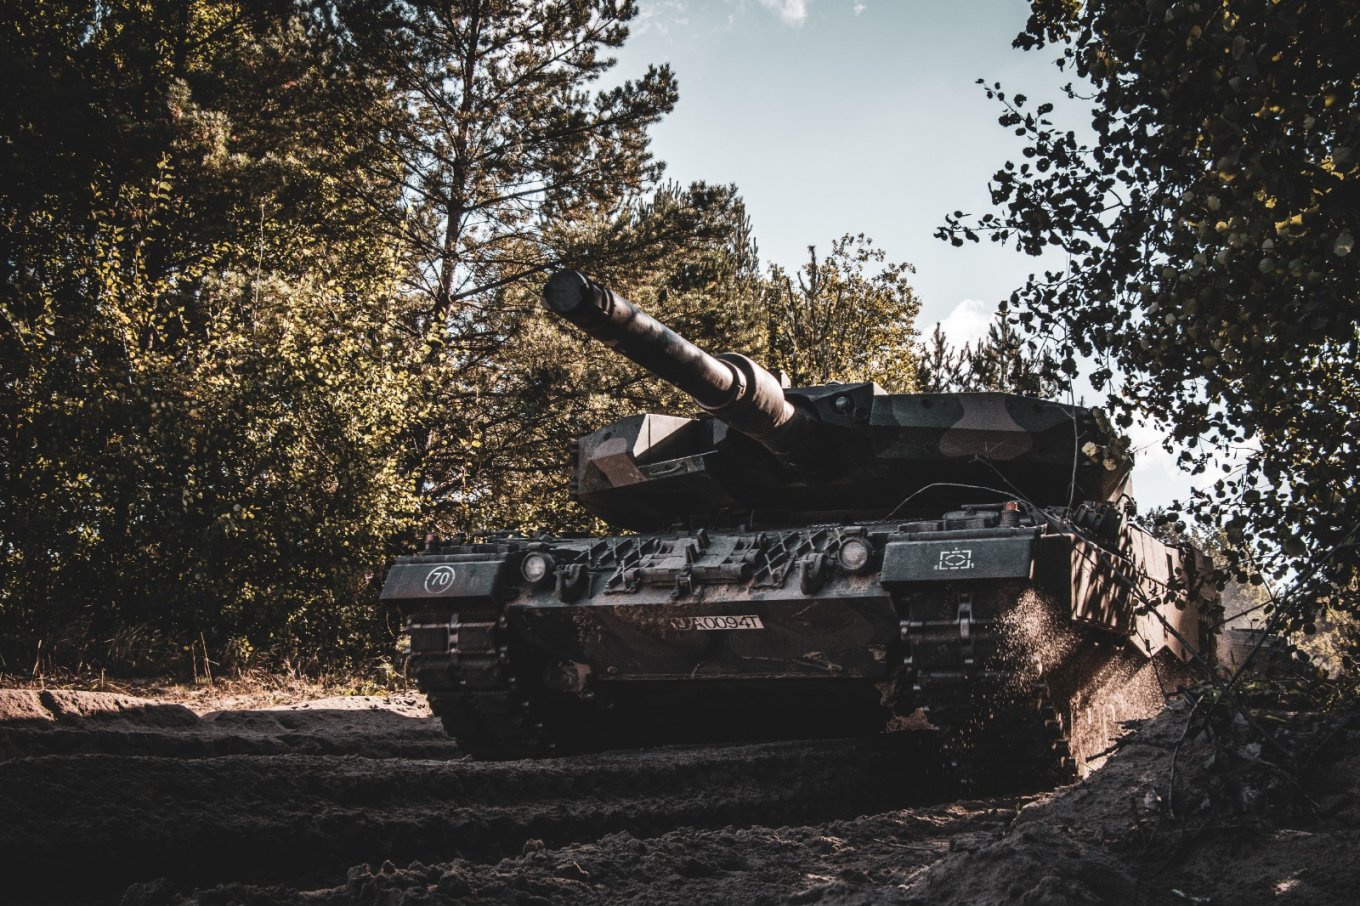 Leopard 2PL - Польща має власну модернізацію, яка виготовляється з Leopard 2A4